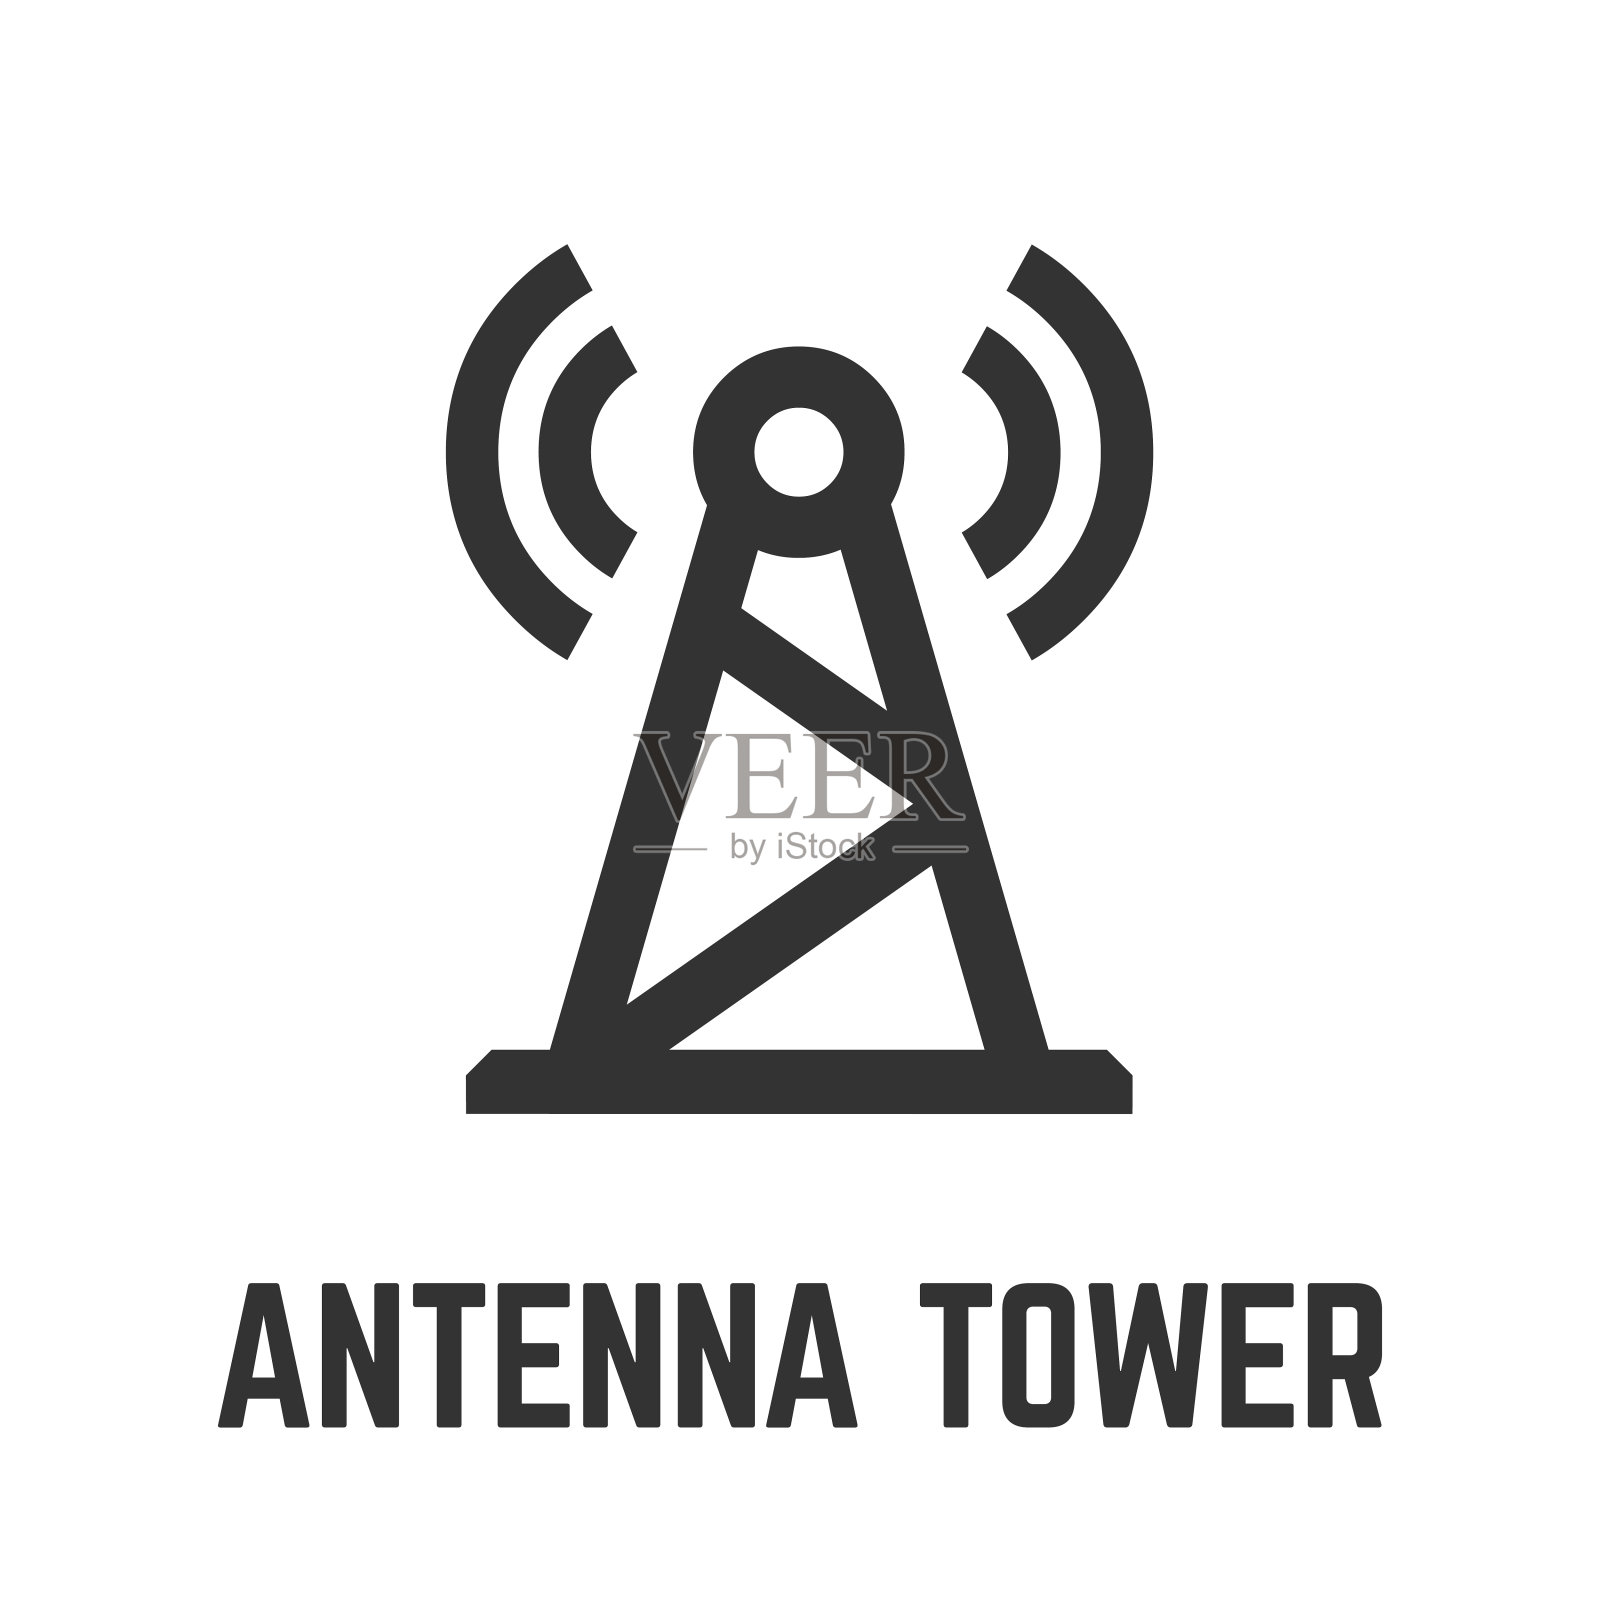 天线塔图标具有高大的电信广播电台天线塔或基站字形符号。插画图片素材